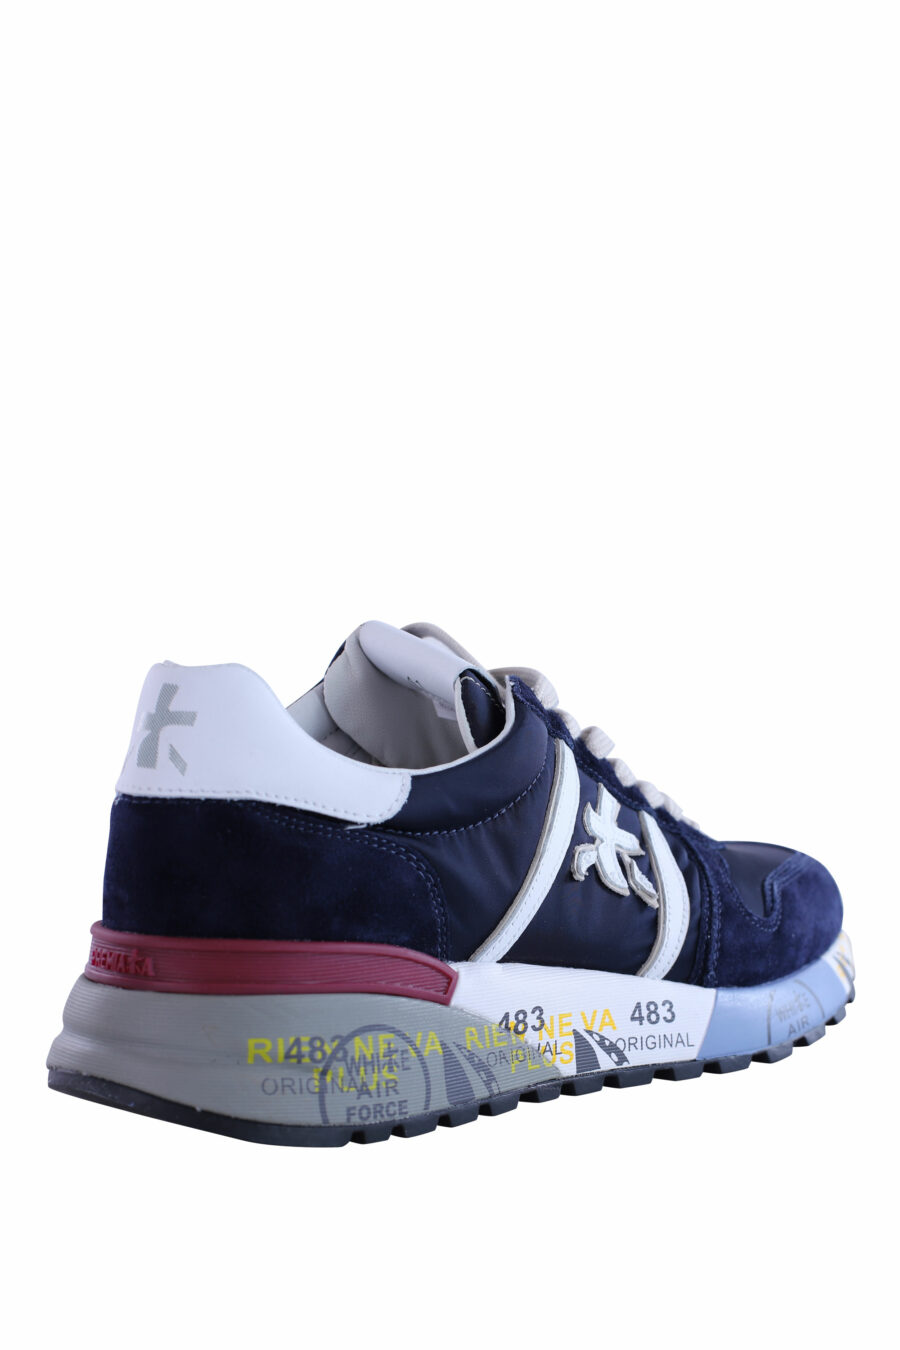 Zapatillas azules con blanco "lander 5675" - IMG 2982